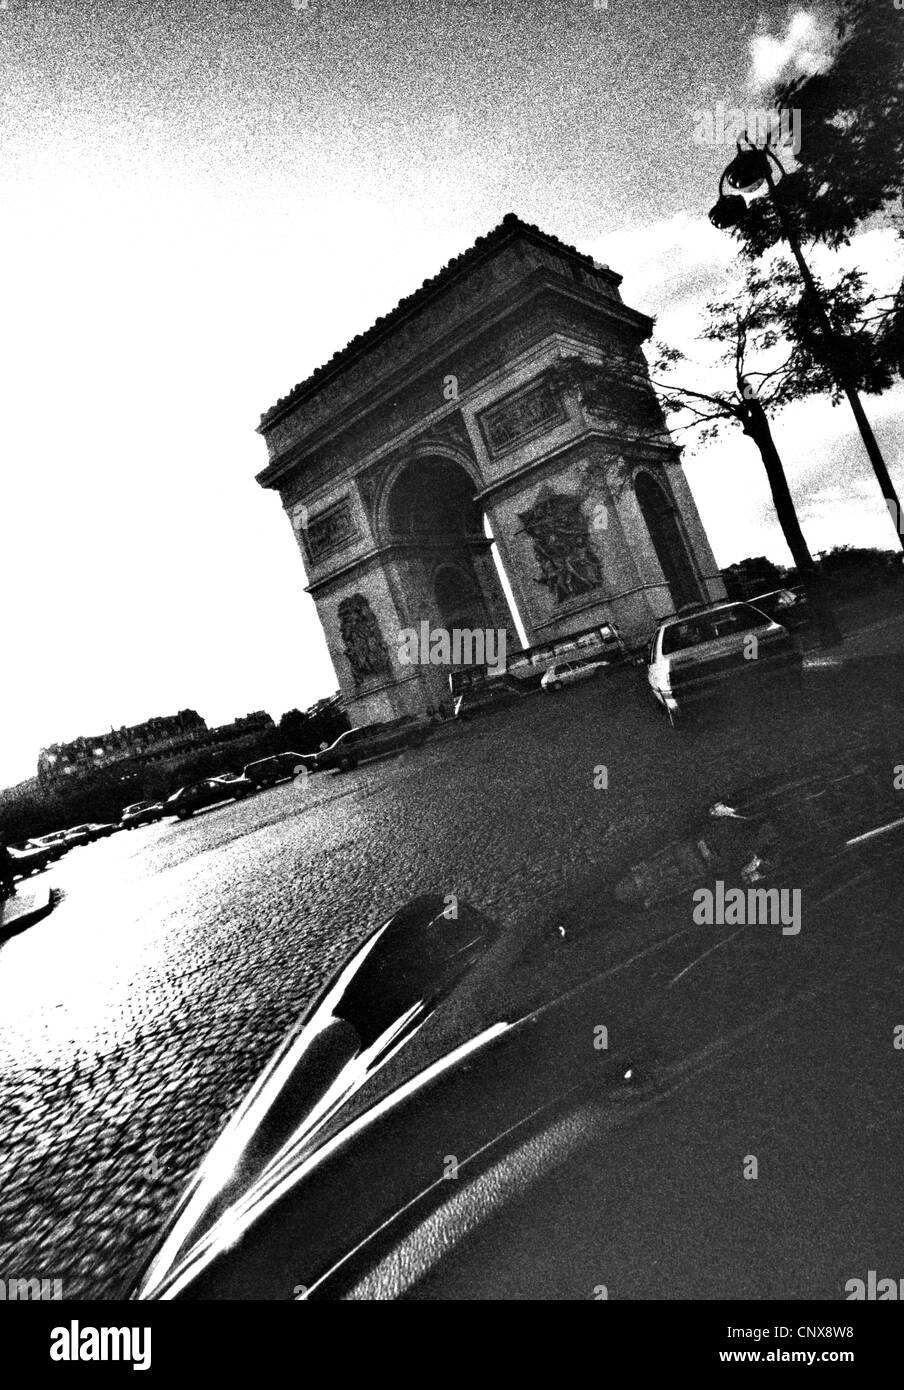 View of the Arch De Triumph Paris from 1965 Citroen DS19 Stock Photo